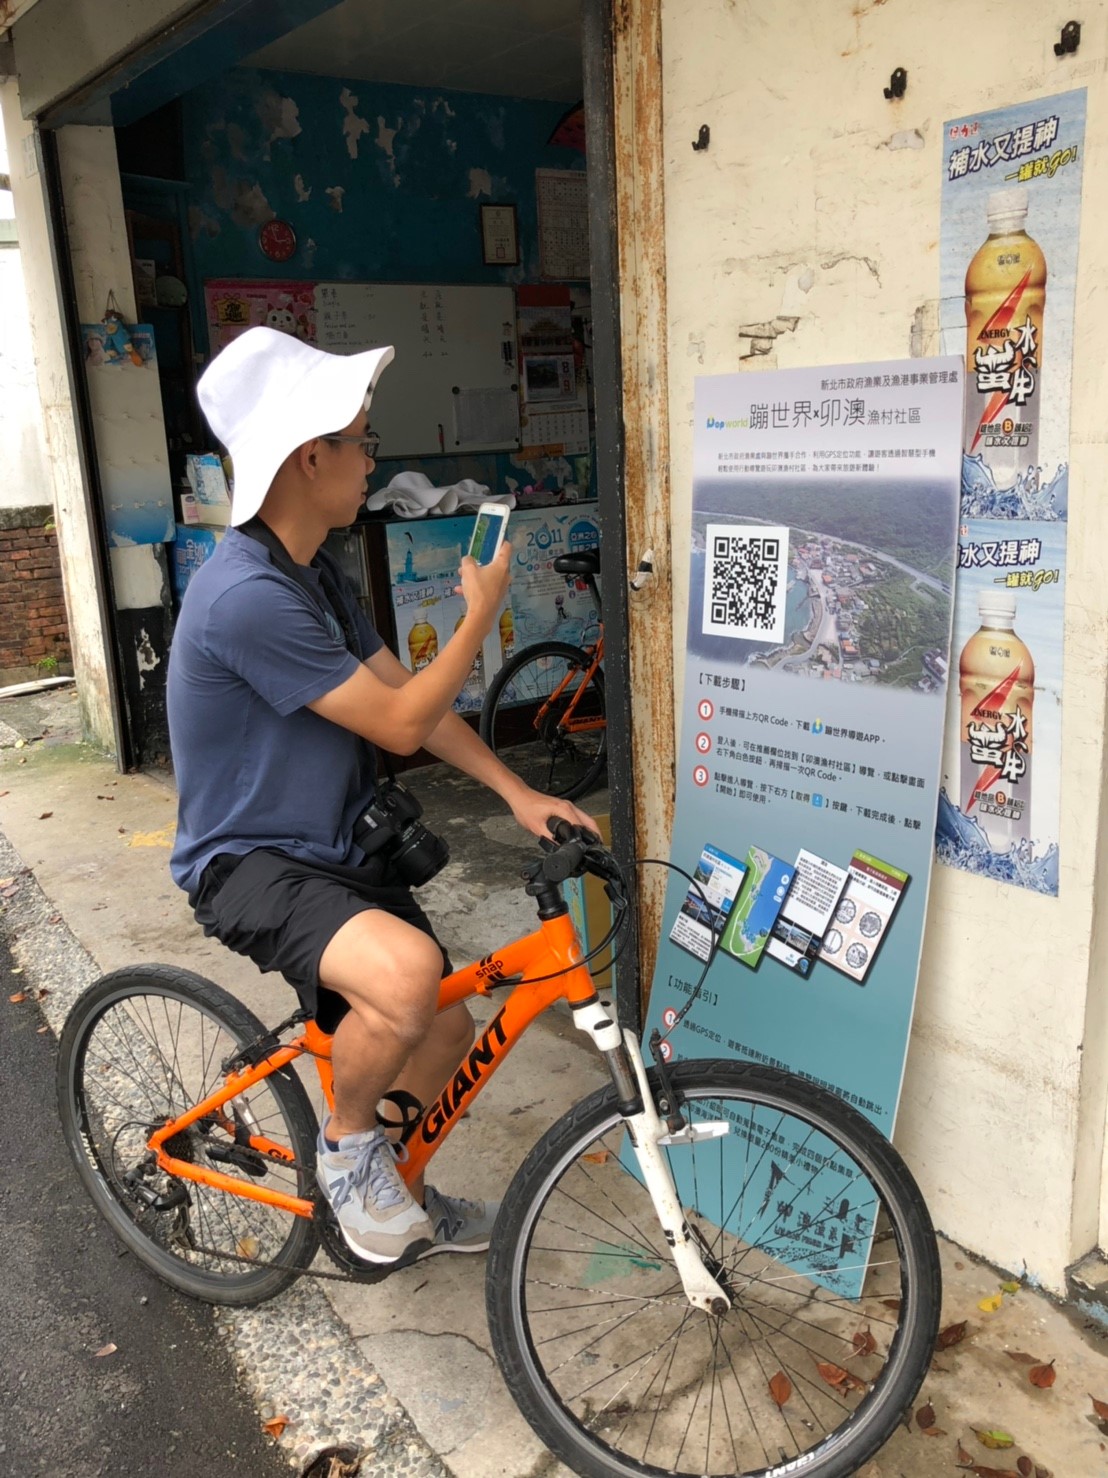 遊客在福隆自行車店外下載卯澳漁村行動導覽APP